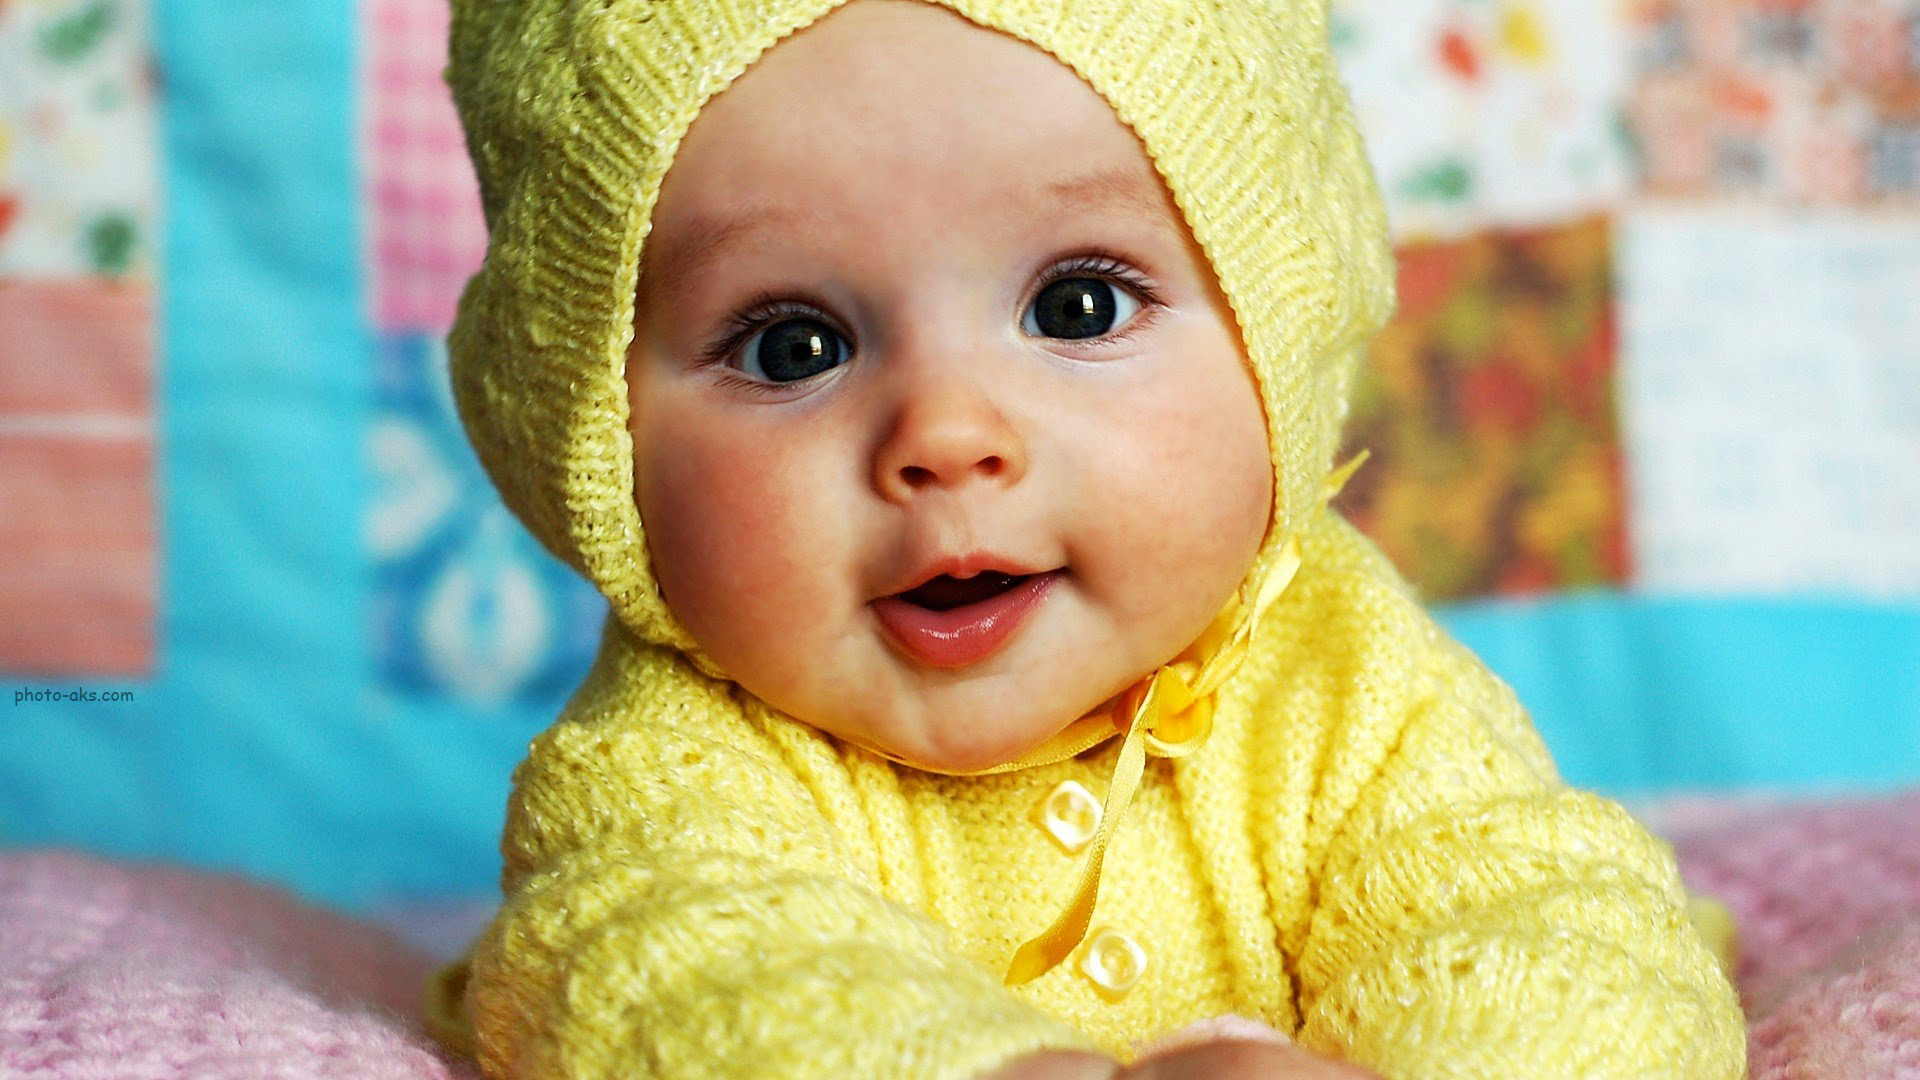 Baby_Yellow_Dress.jpg